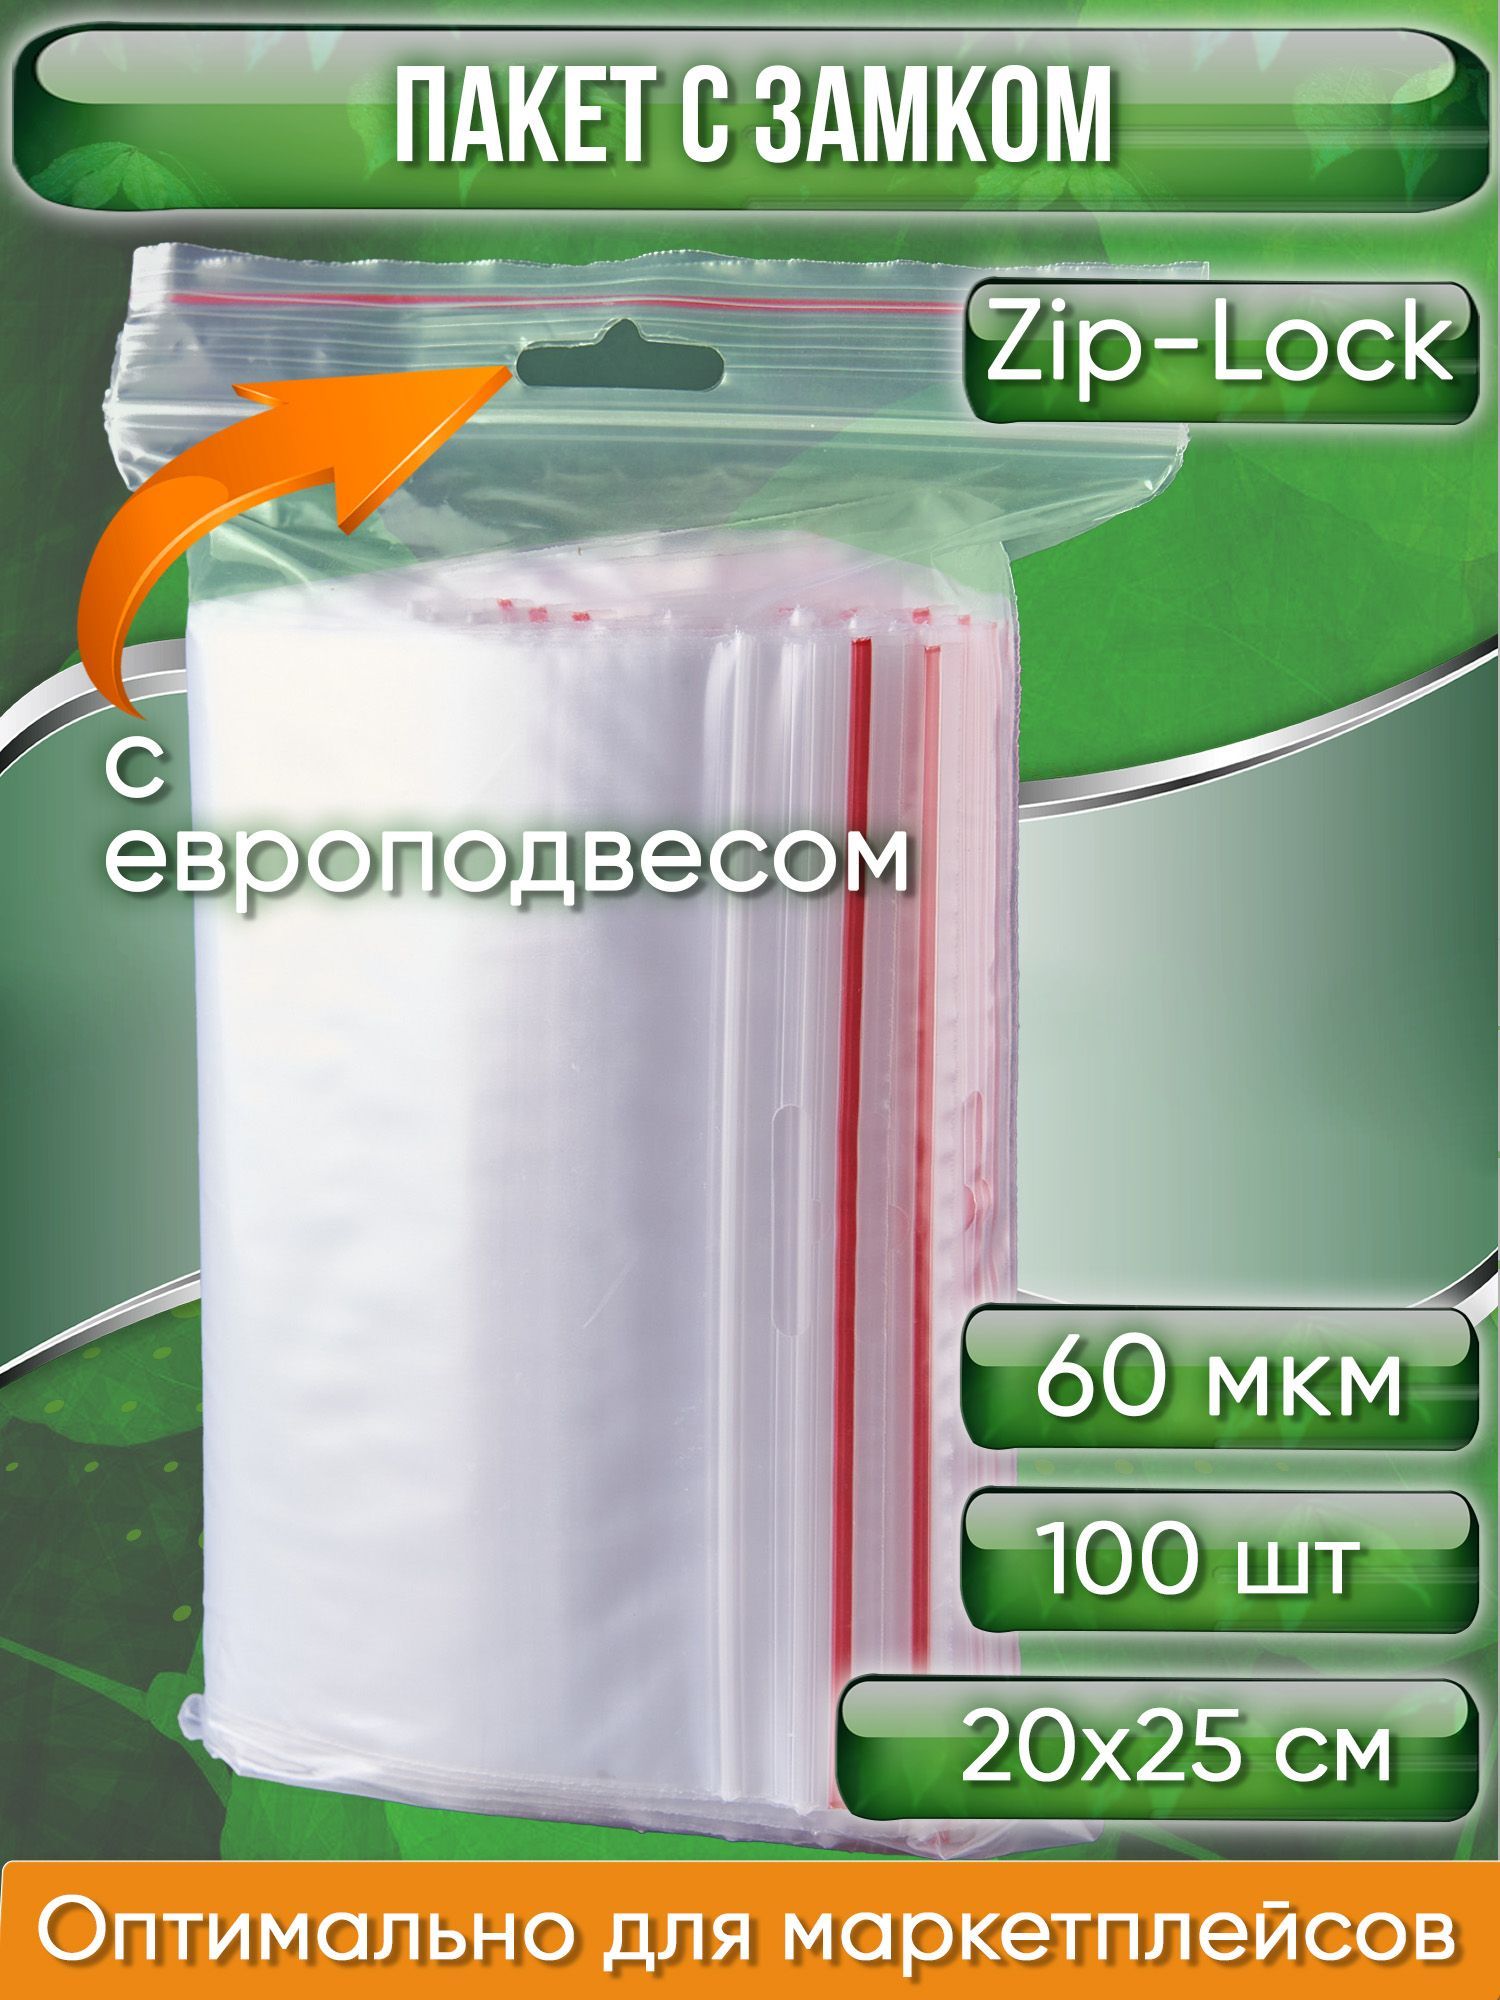 ПакетсзамкомZip-Lock(Зиплок),20х25см,60мкм,севроподвесом,сверхпрочный,100шт.